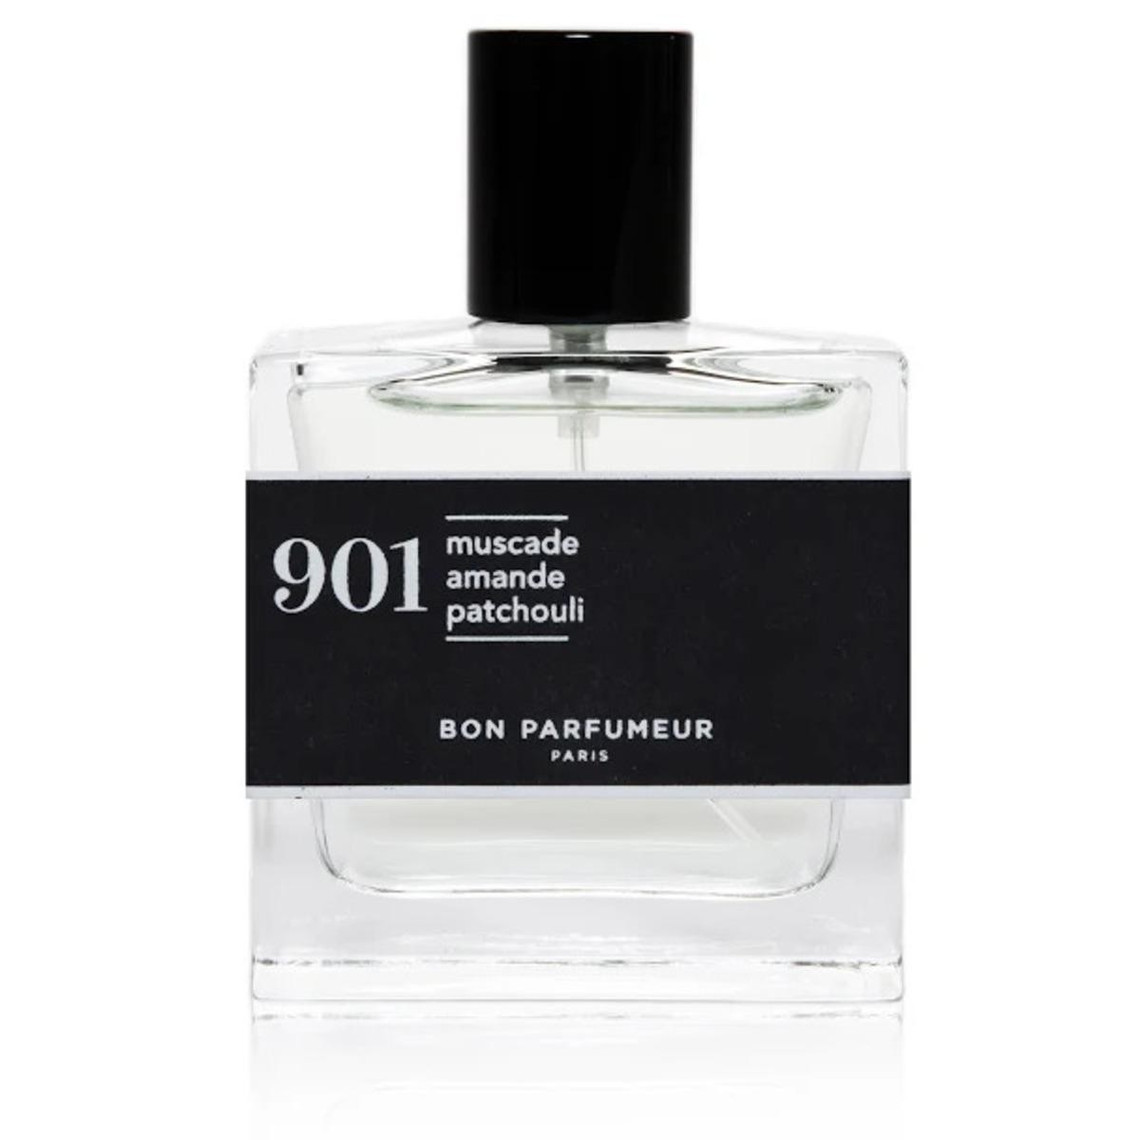 N°901 Muscade Amande Patchouli Eau de Parfum